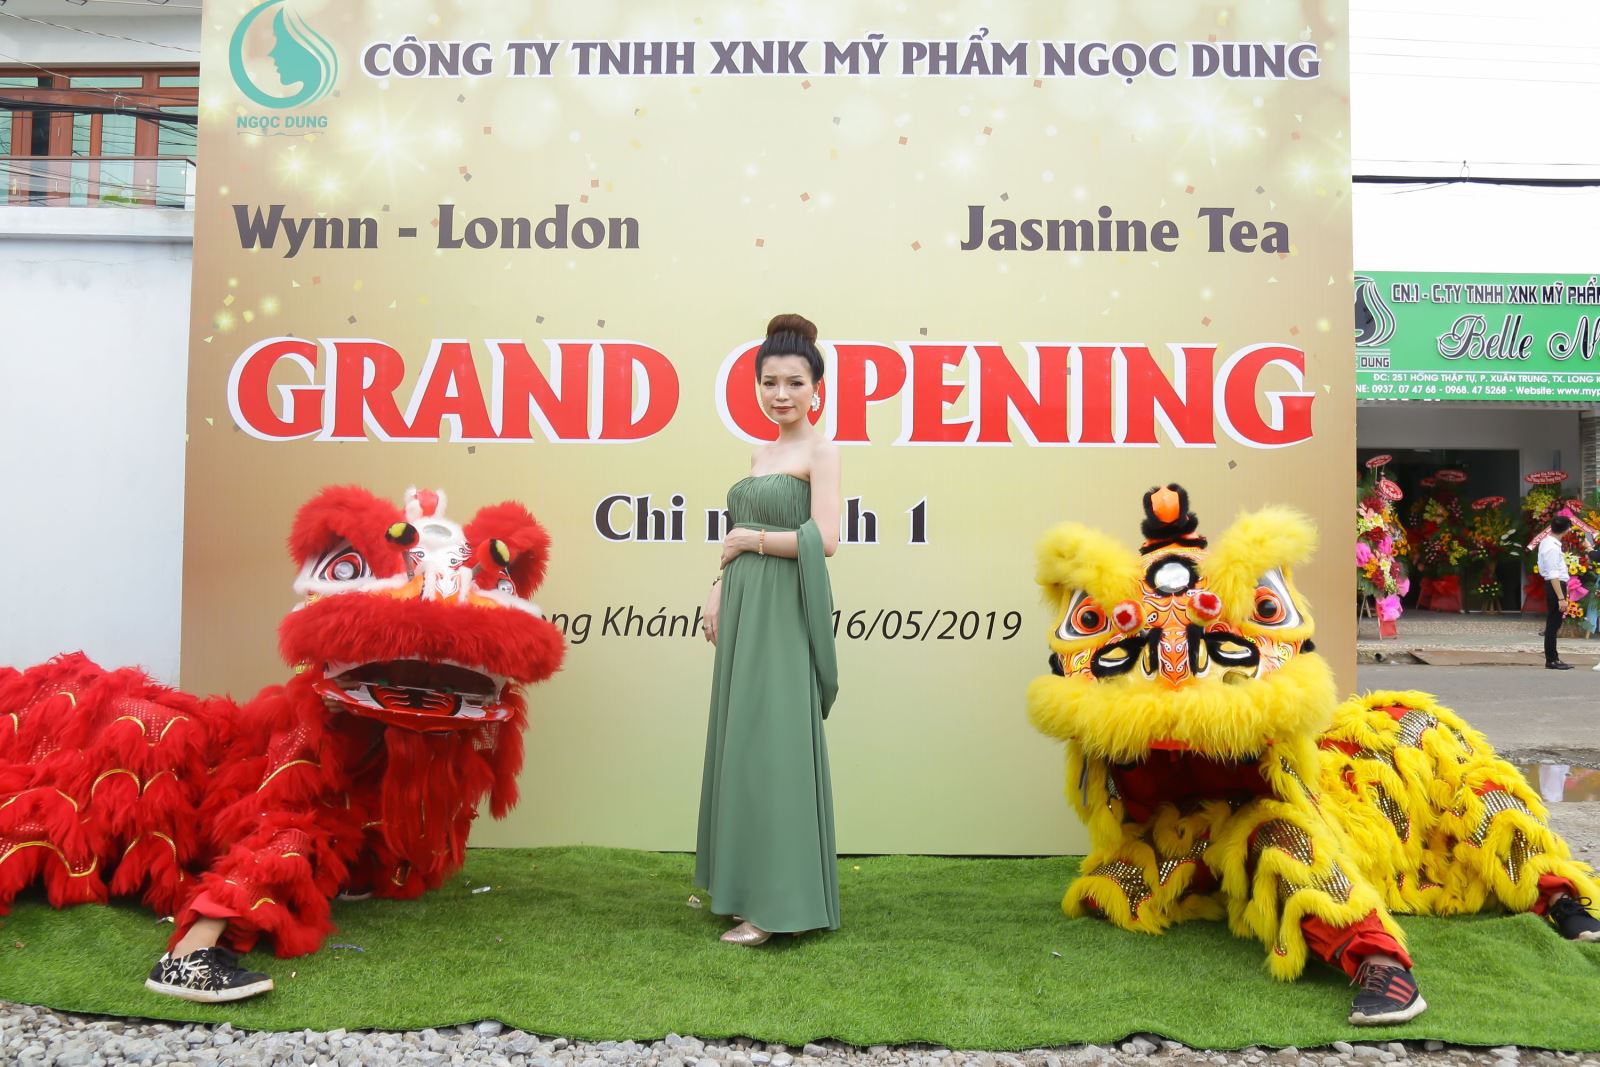 Nữ doanh nhân tài sắc vẹn toàn Trần Thị Dung – phát triển chi nhánh Công ty mỹ phẩm  Ngọc Dung tại Đồng Nai  